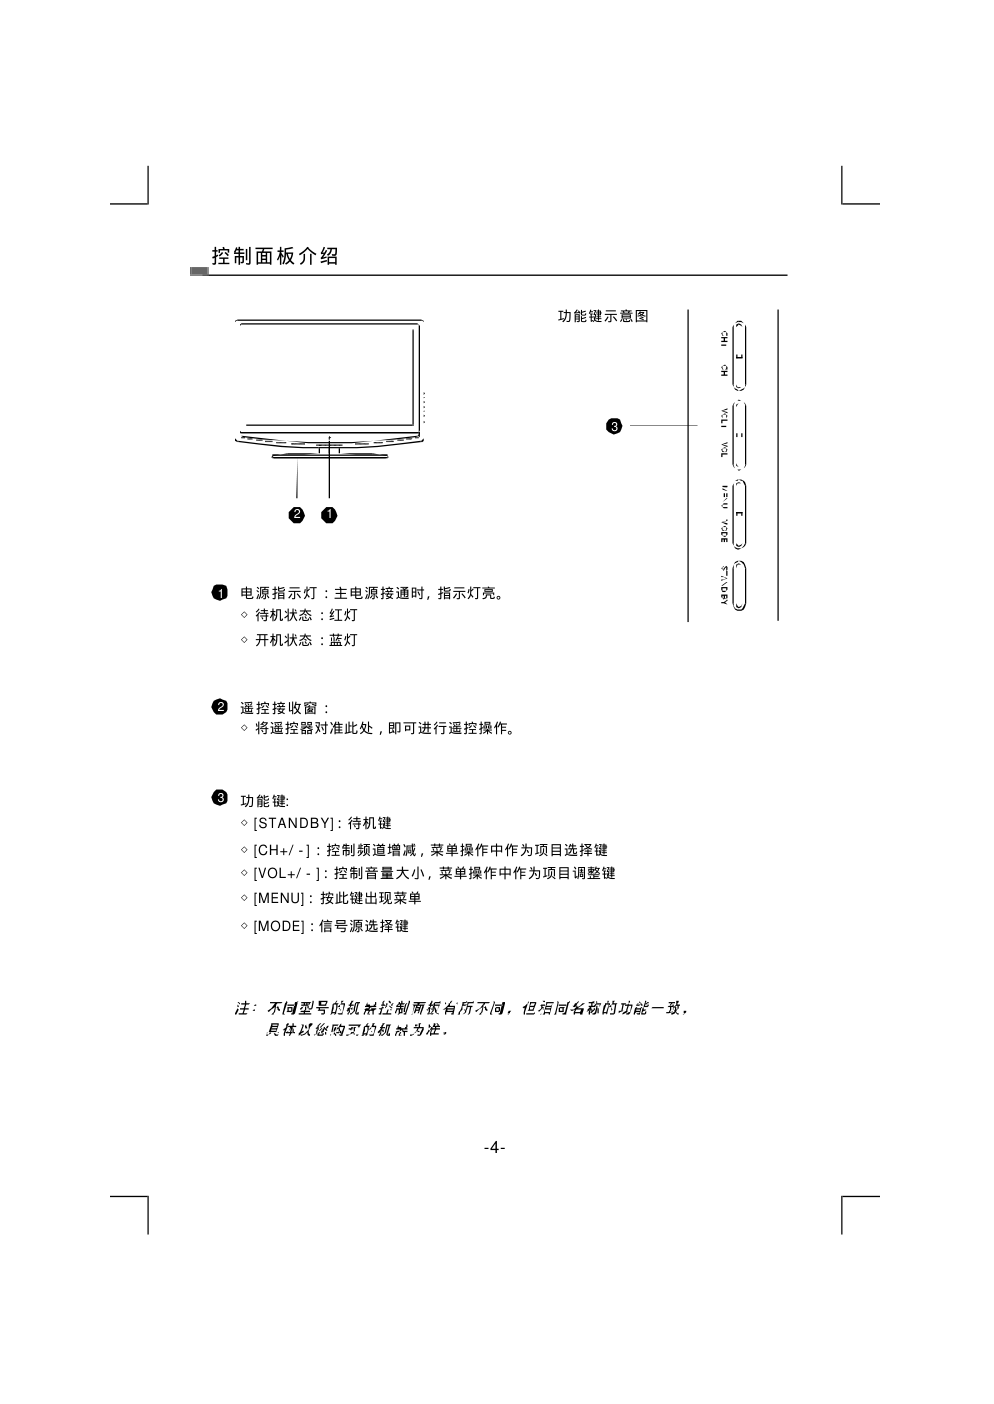 熊猫电子L42A915FI液晶彩色电视机说明书-6